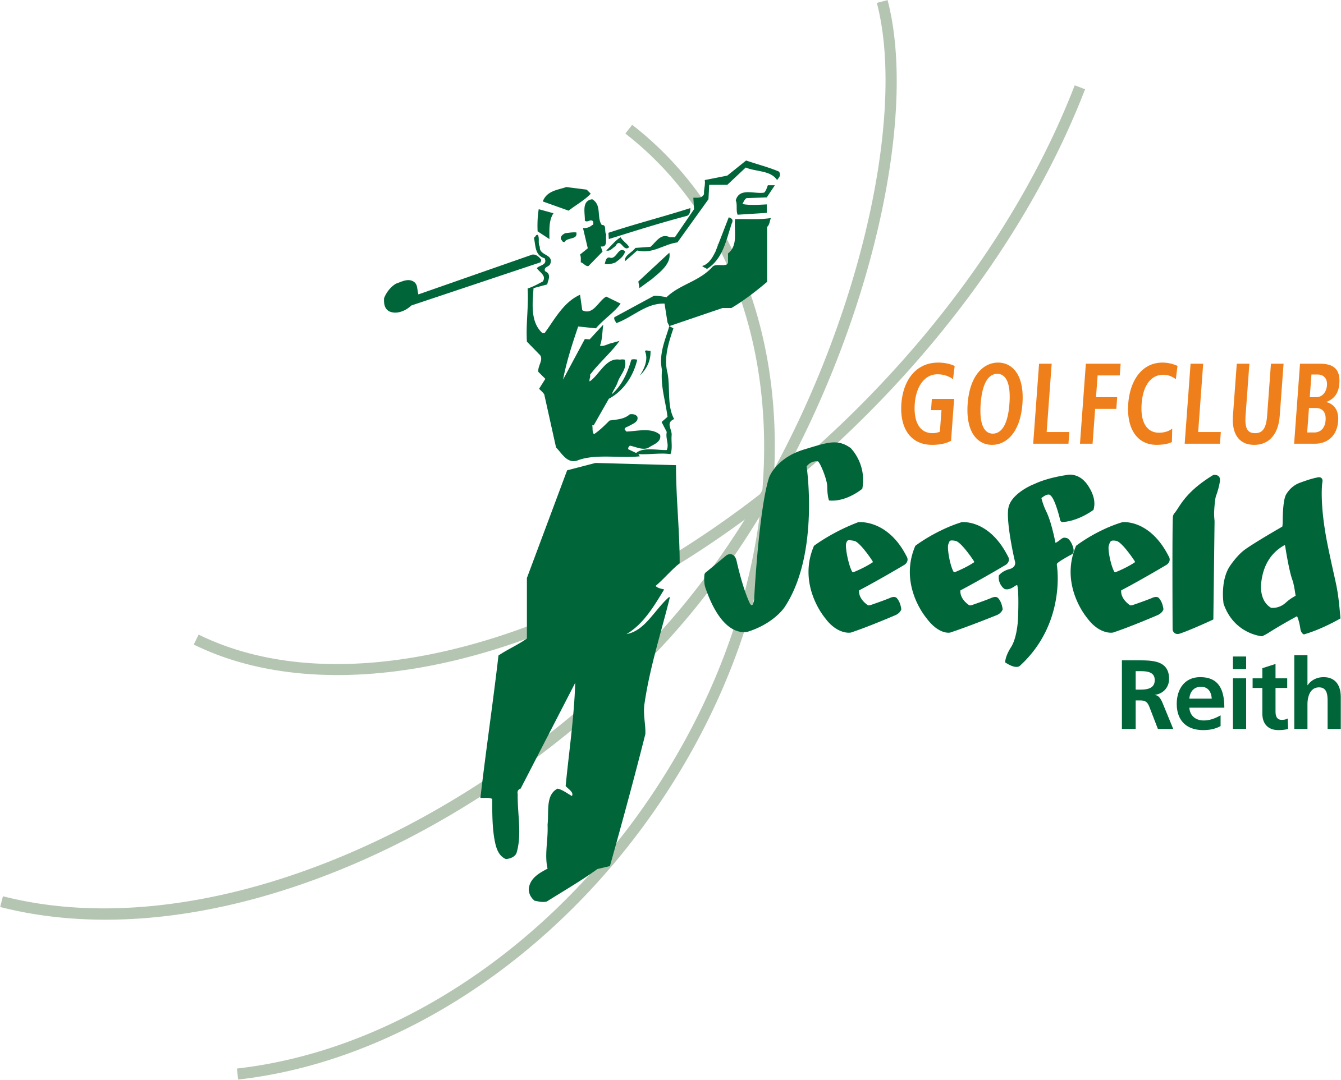 Golfclub Seefeld Reith - Logo